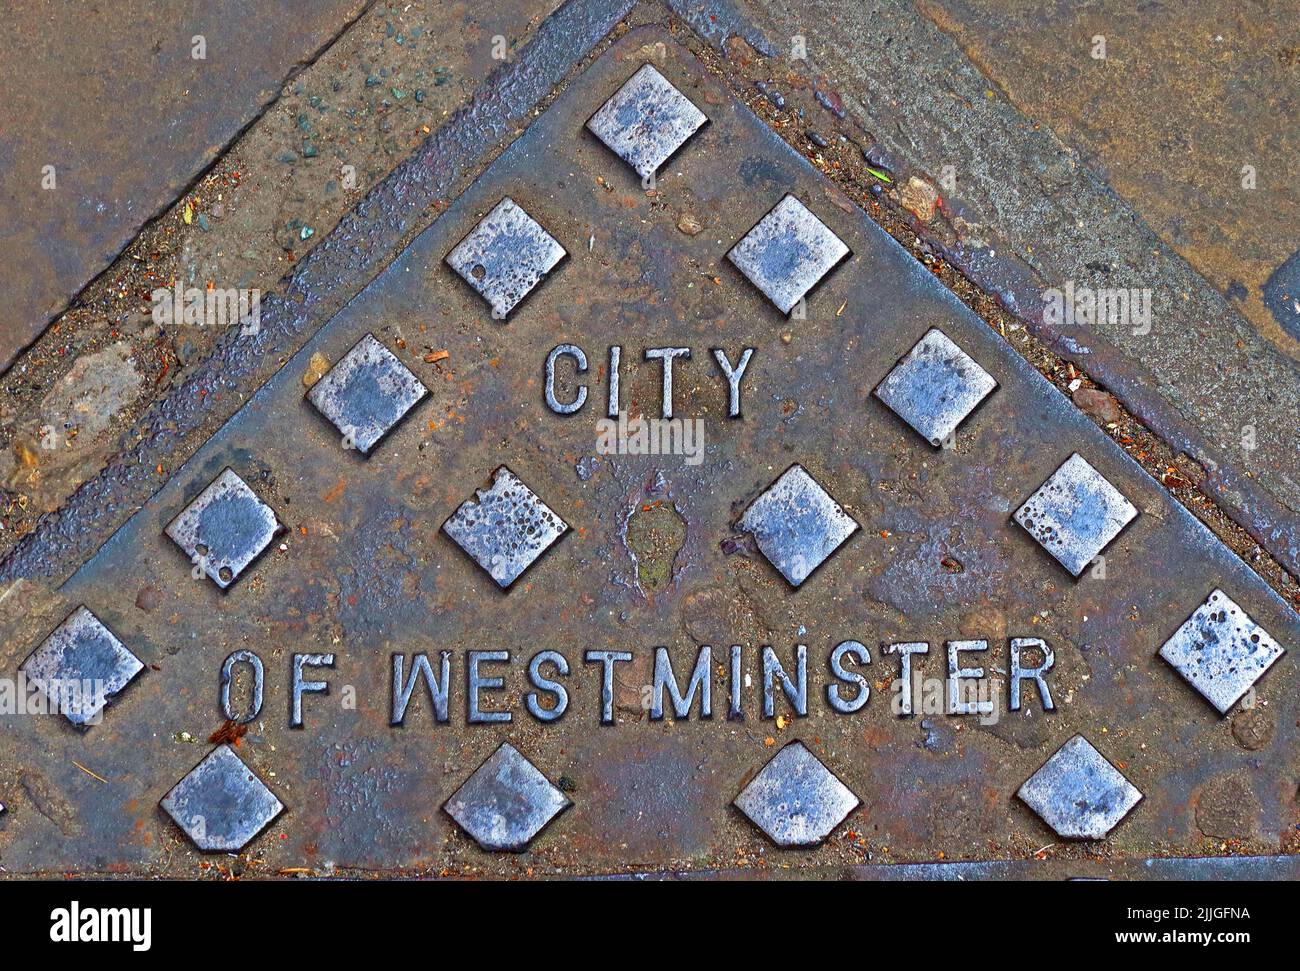 City of Westminster – grille en fonte gaufrée, centre de Londres, Angleterre, Royaume-Uni, SW1P 2hr Banque D'Images